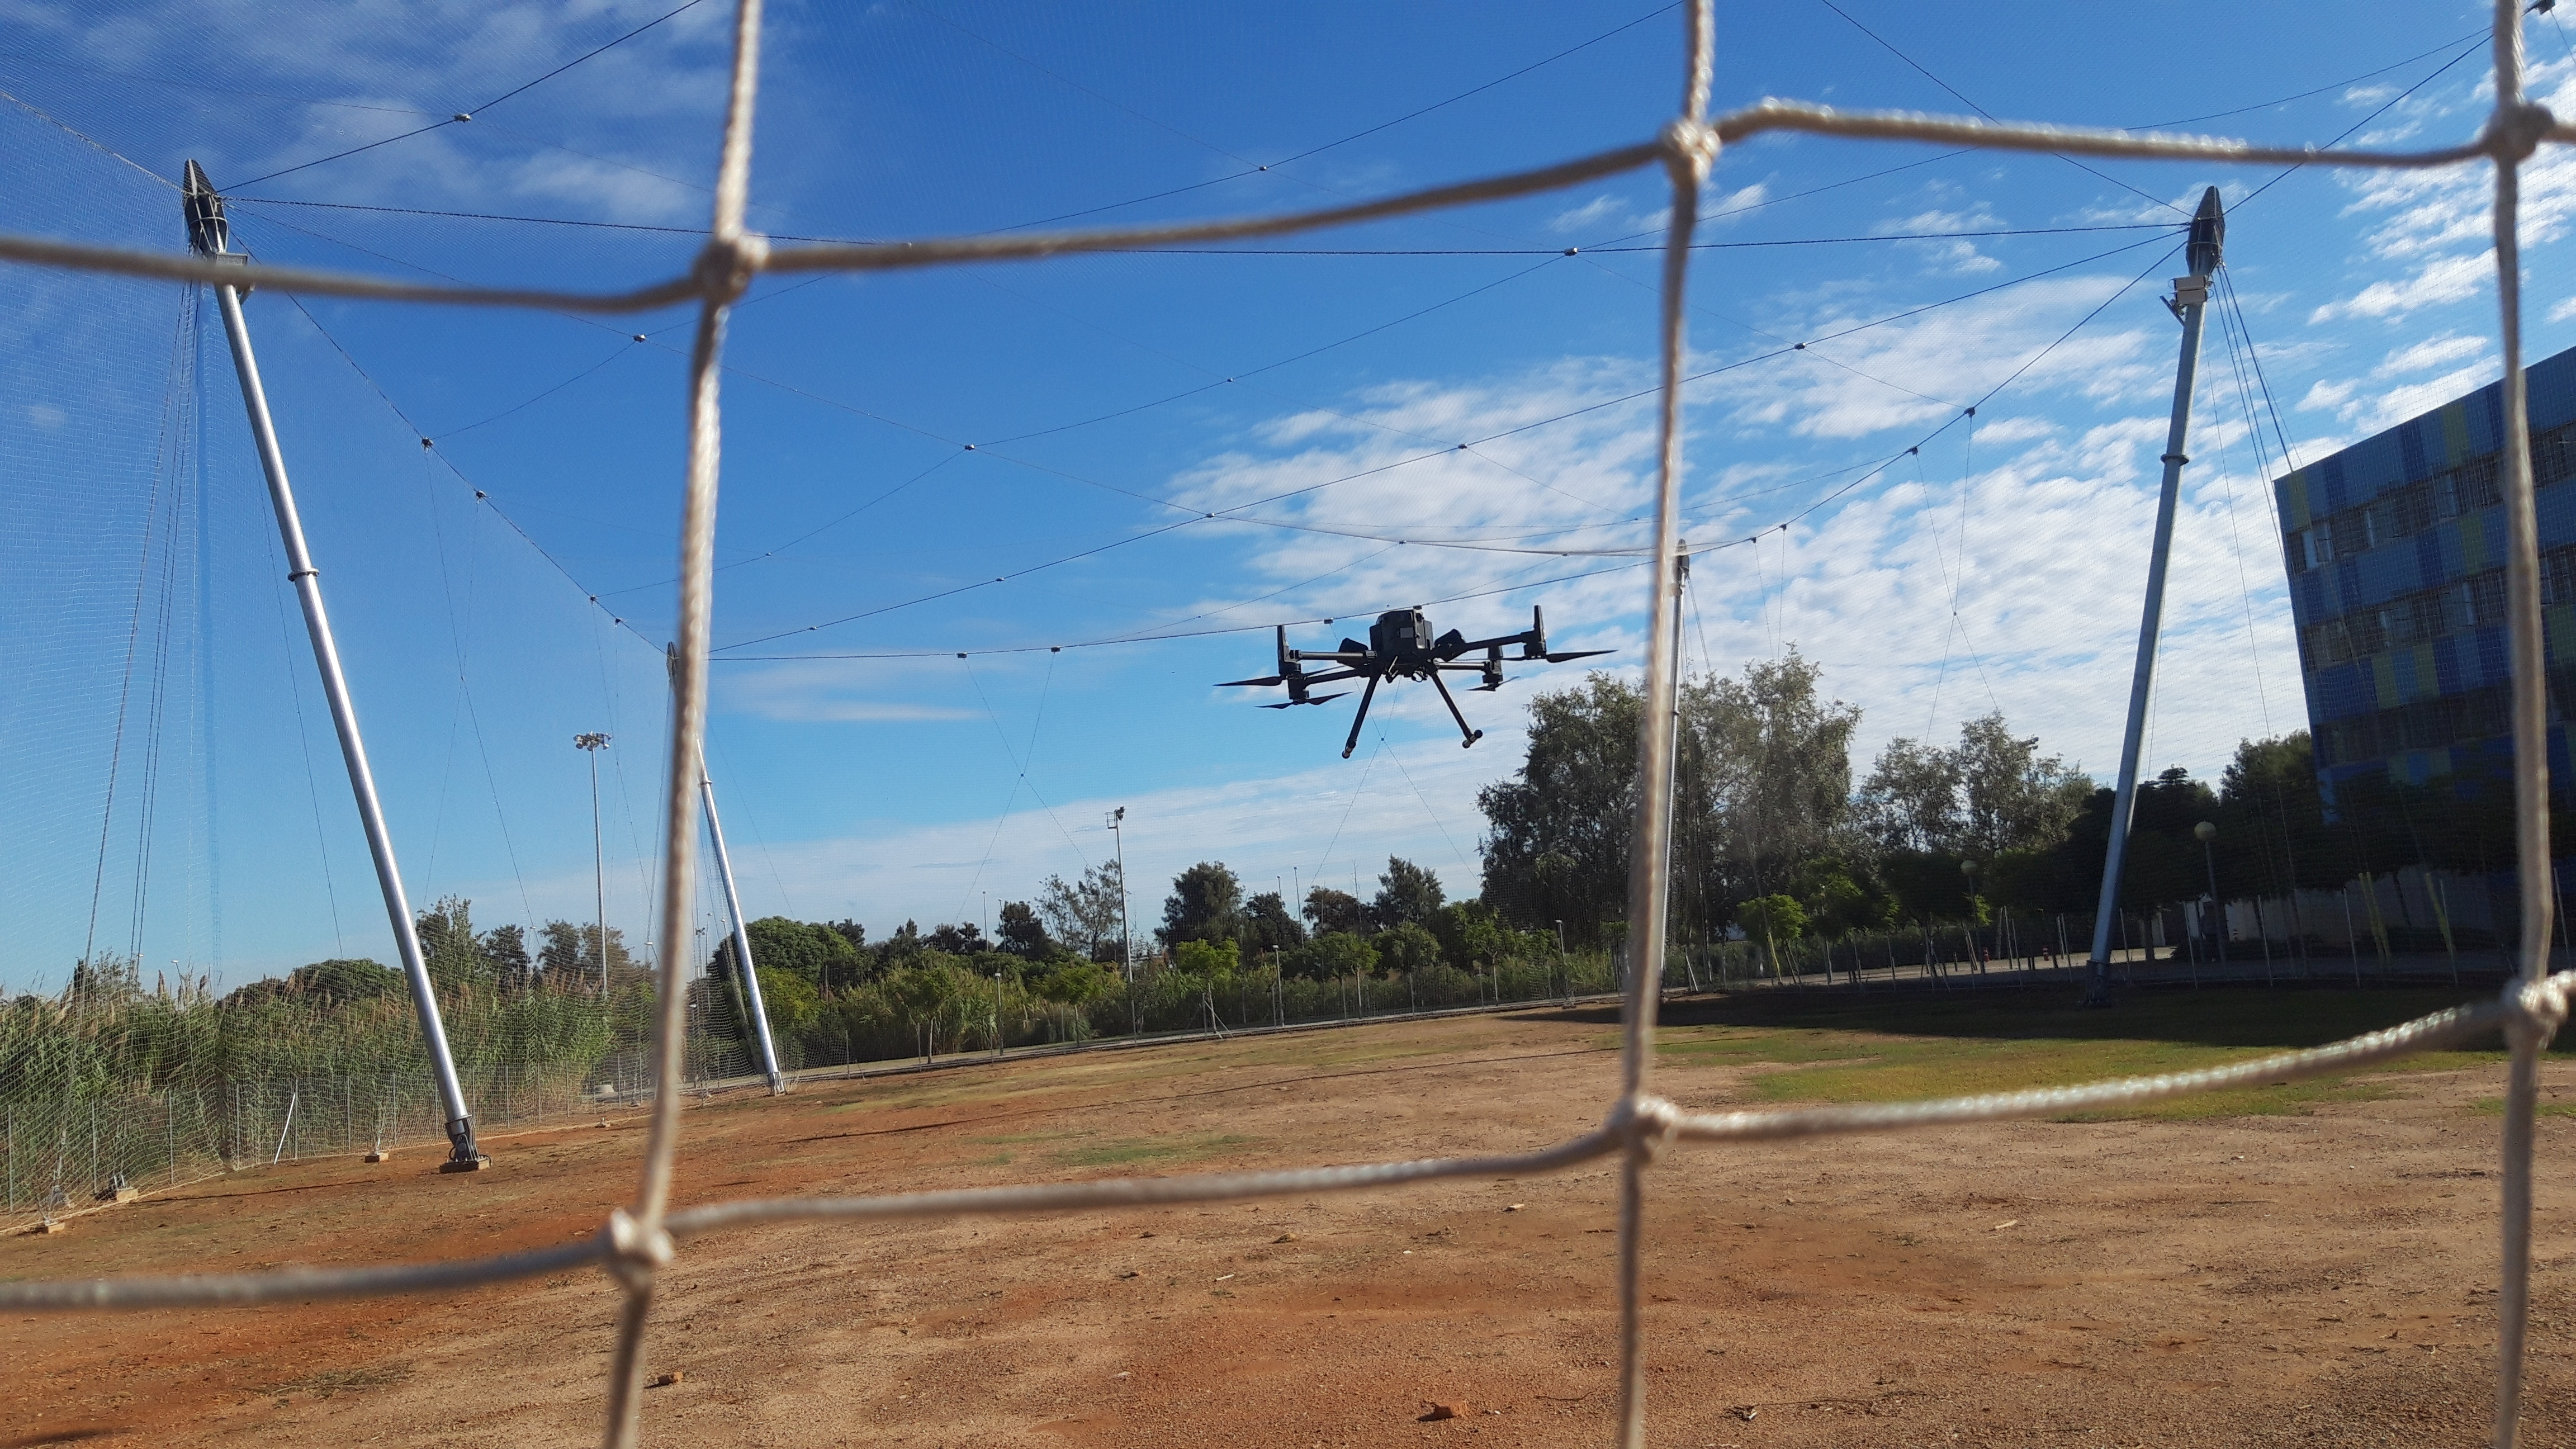 En marxa el DroneLab, laboratori de recerca de drons, al Campus del Baix Llobregat